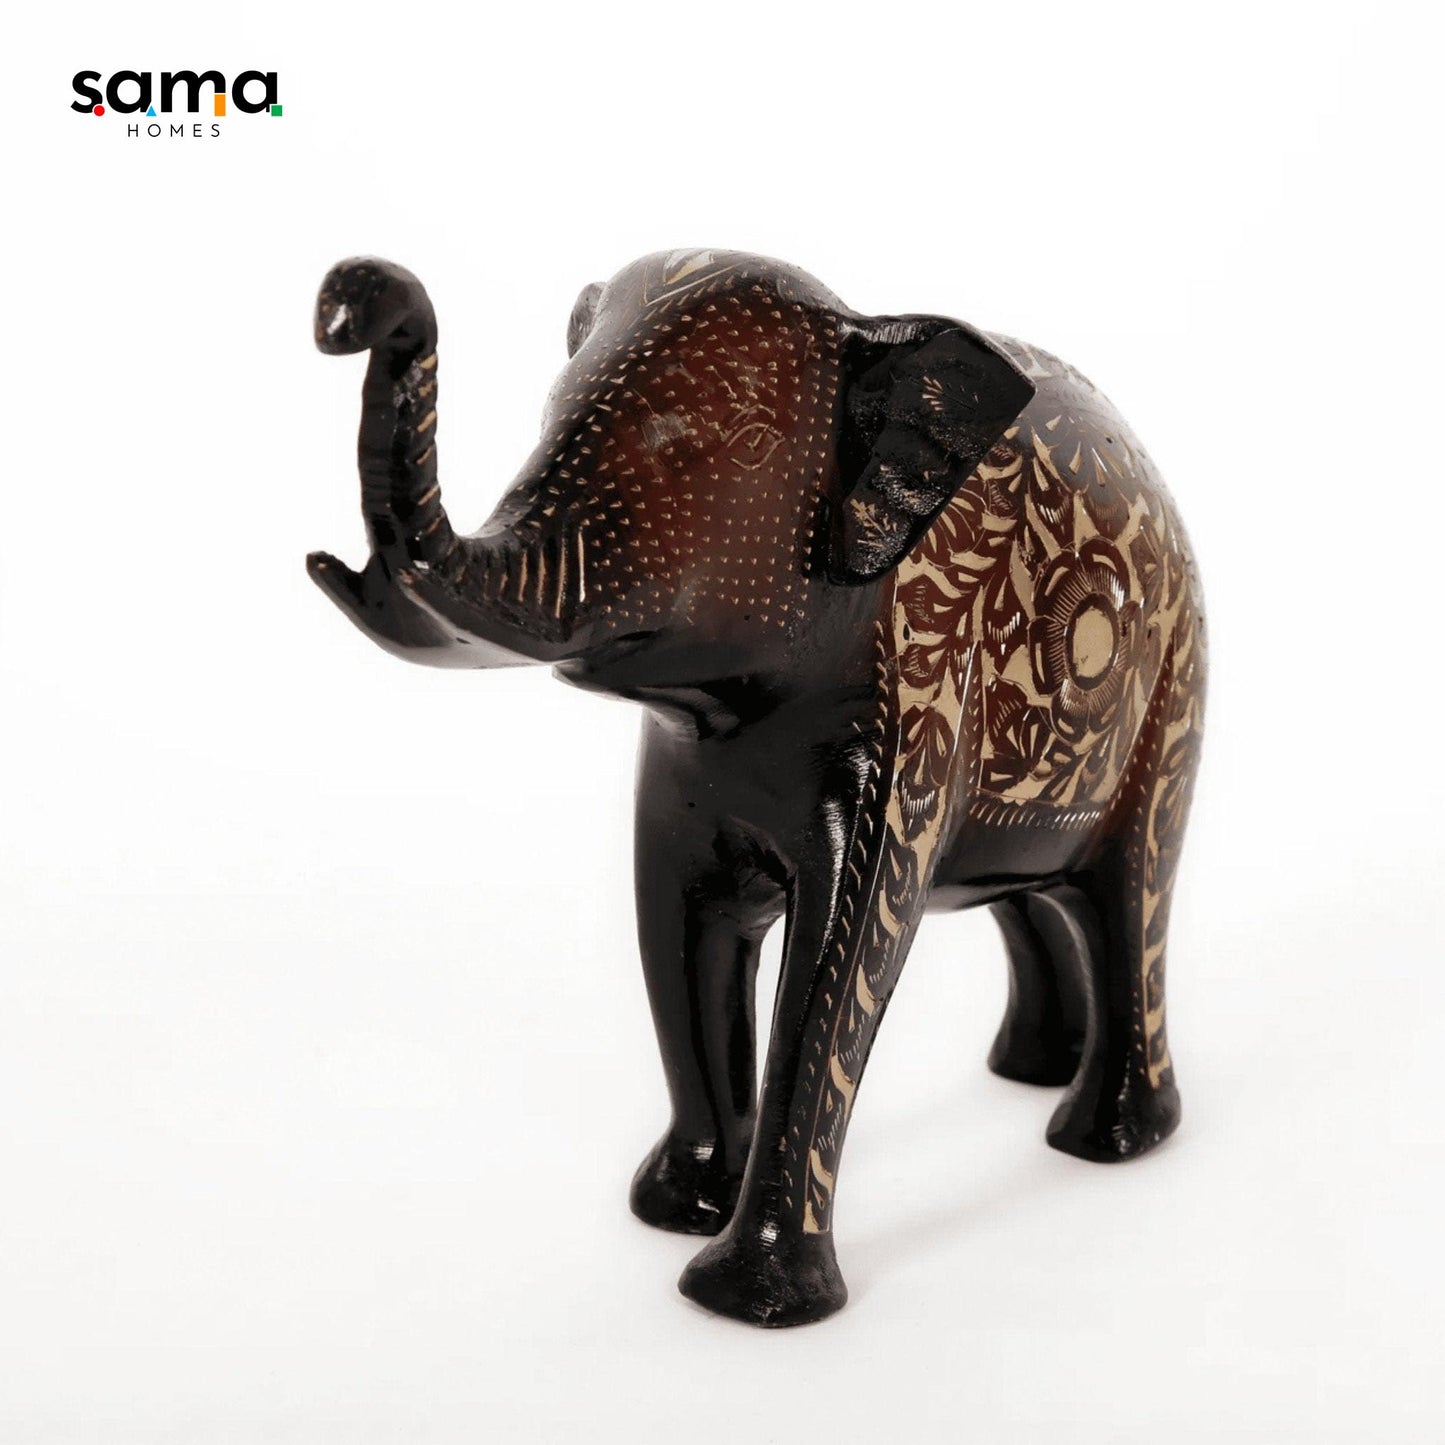 SAMA Homes - single brass elephant